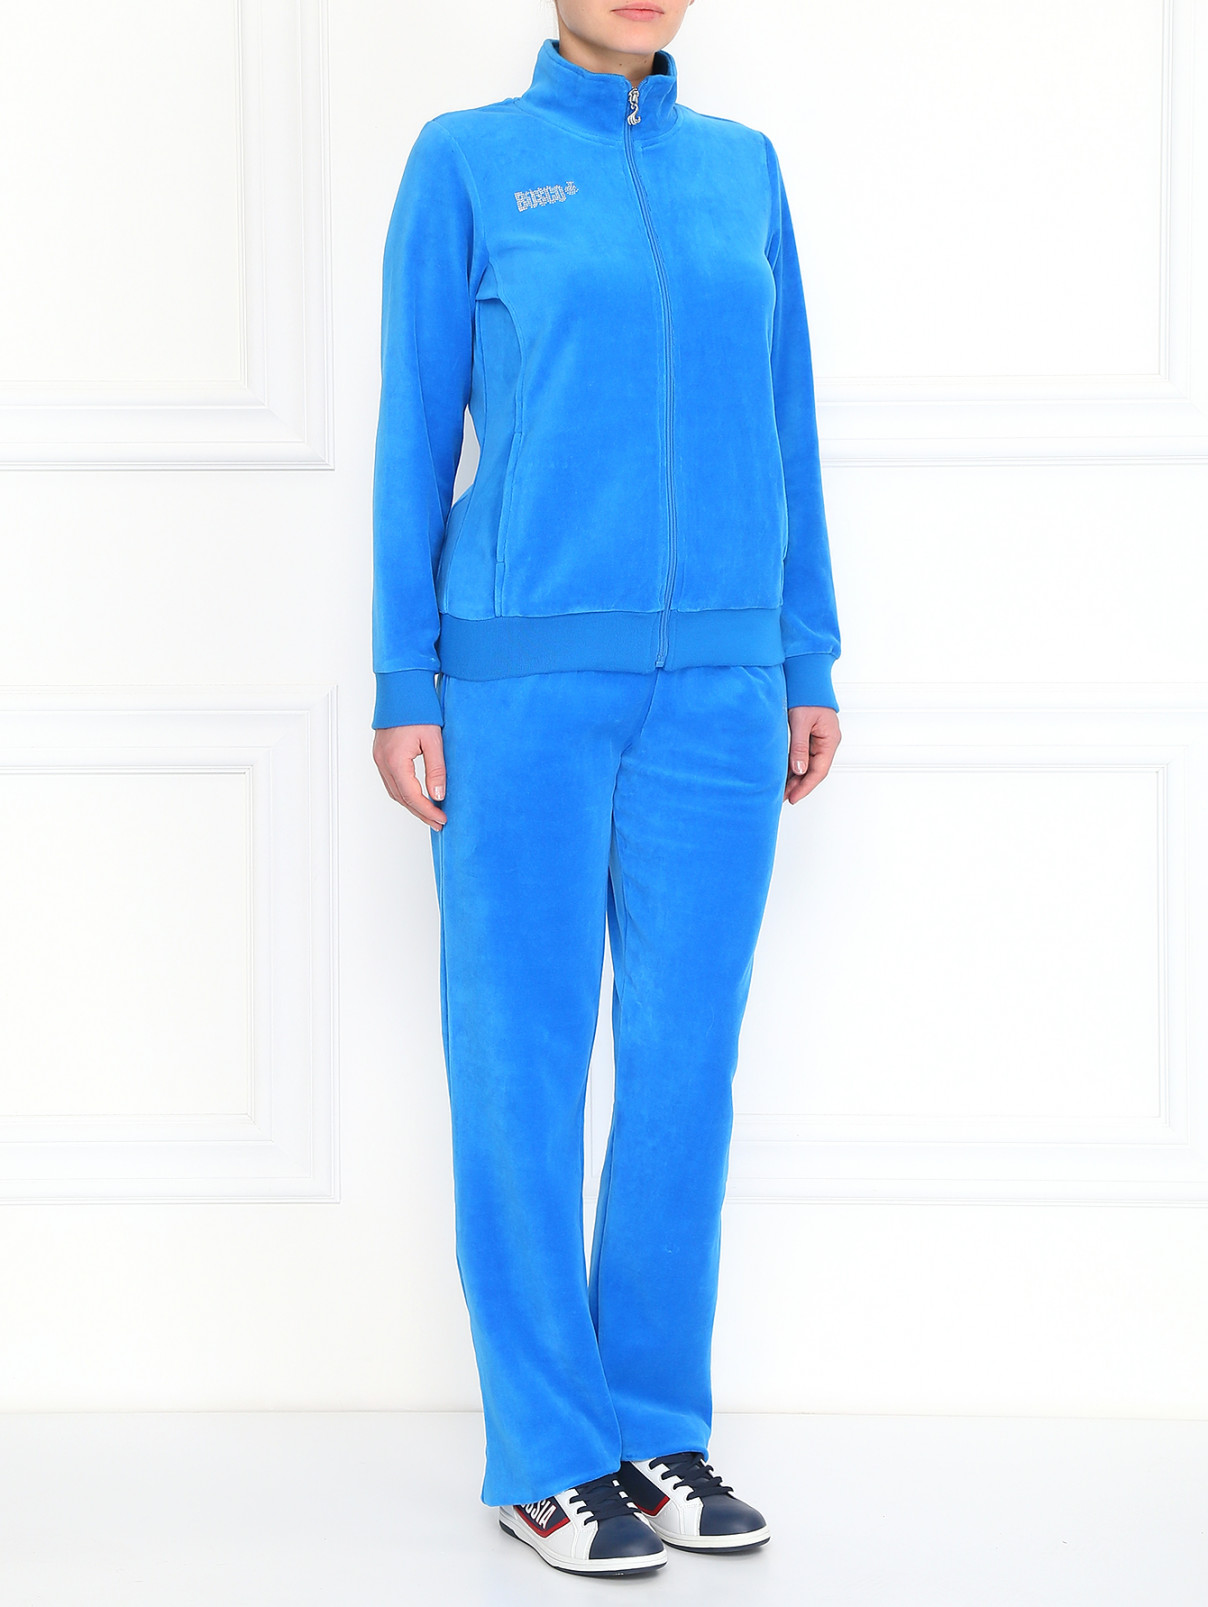 Спортивный костюм из велюра со стразами BOSCO  –  Модель Общий вид  – Цвет:  Синий